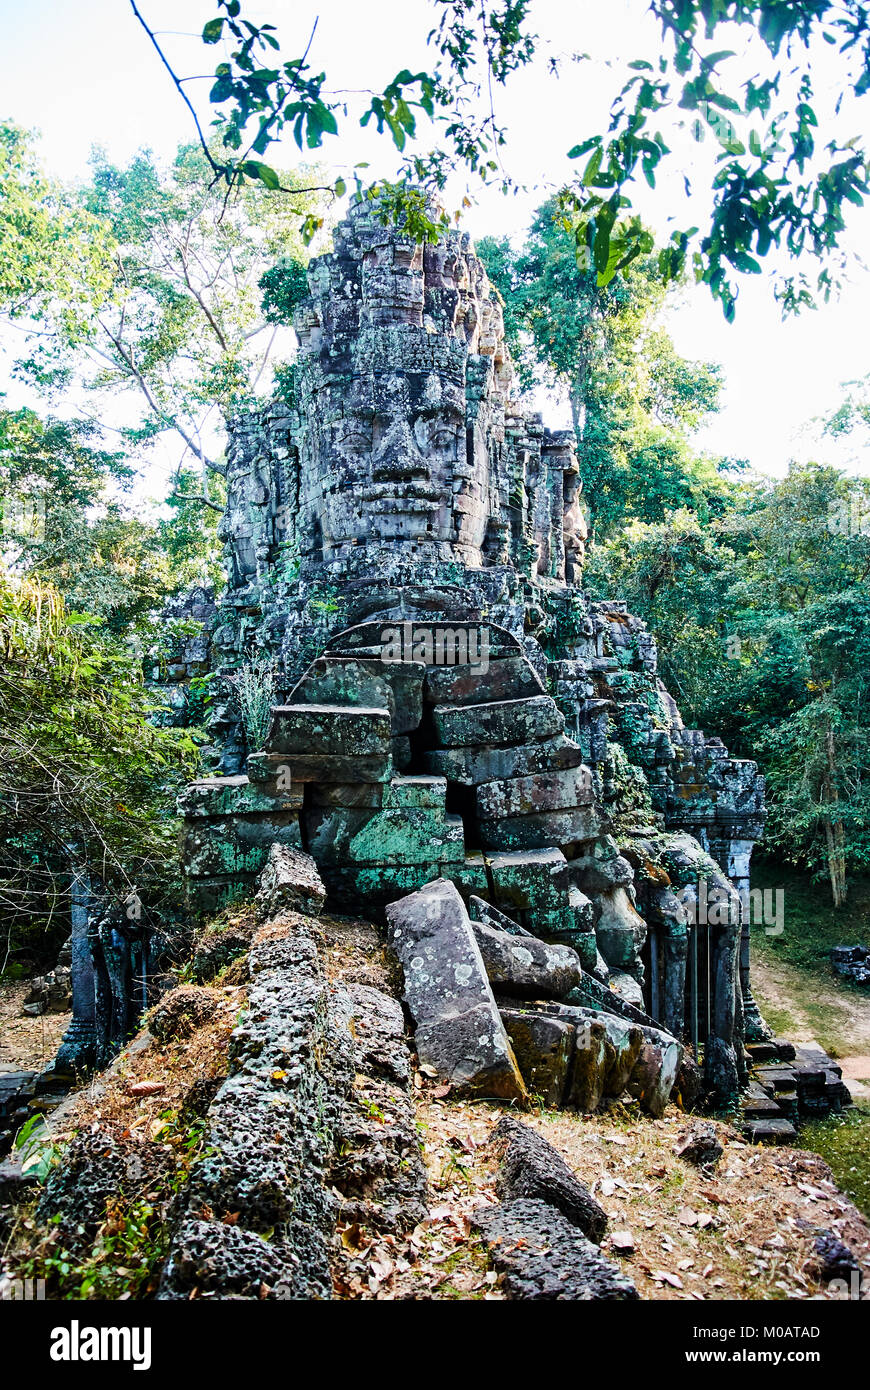 Edificio storico di Angkor Wat Thom Cambogia con sculture di devatas facce di pietra di serenità oceano di latte Foto Stock